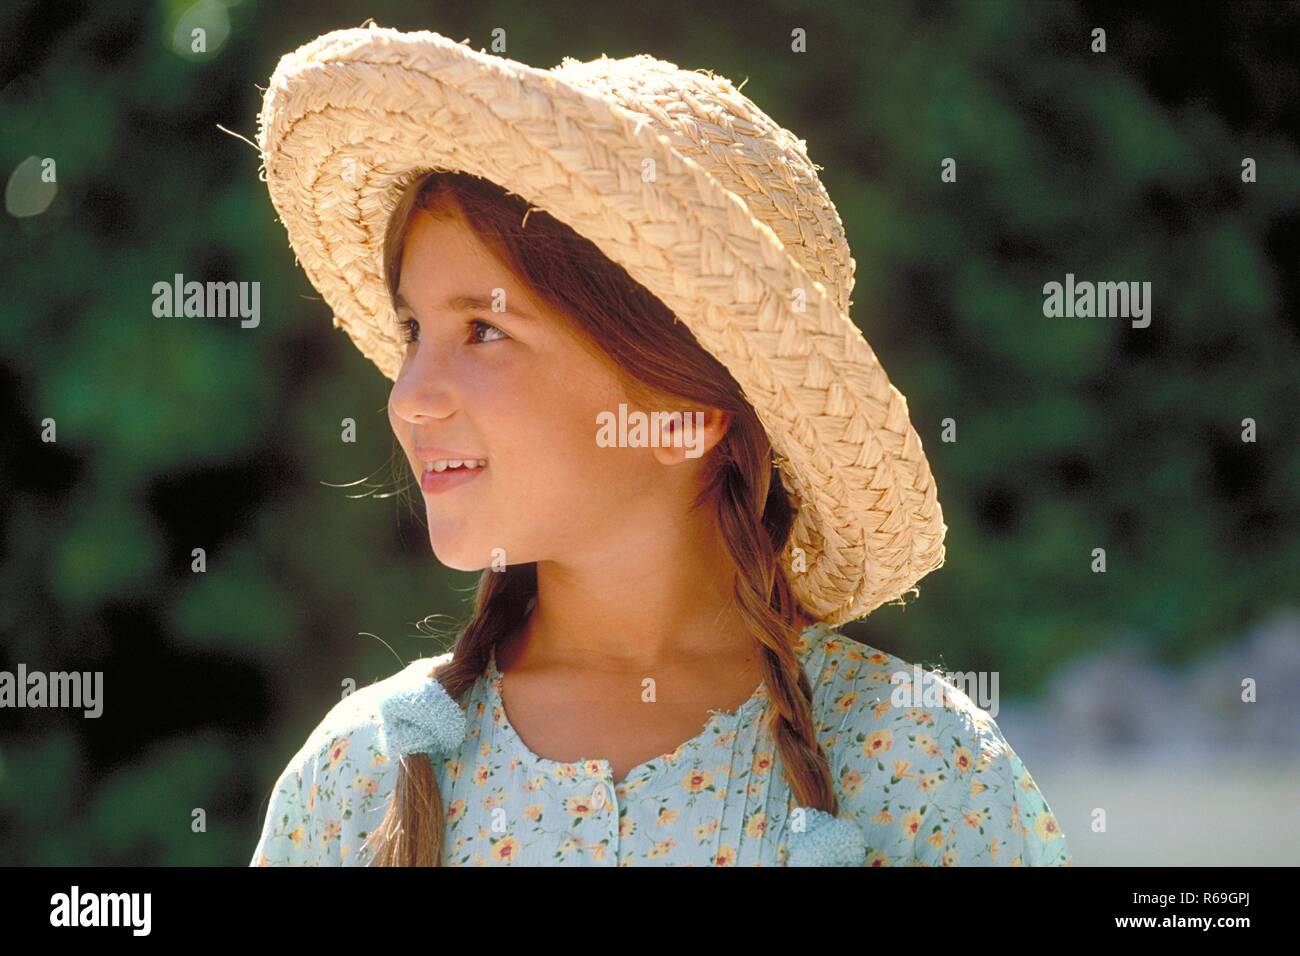 Portrait, Outdoor, Profil von Maedchen, 8 Jahre alt, mit braunen geflochtenen Zoepfen Haaren bekleidet mit hellblau gebluemten Kleid und Strohhut Stock Photo